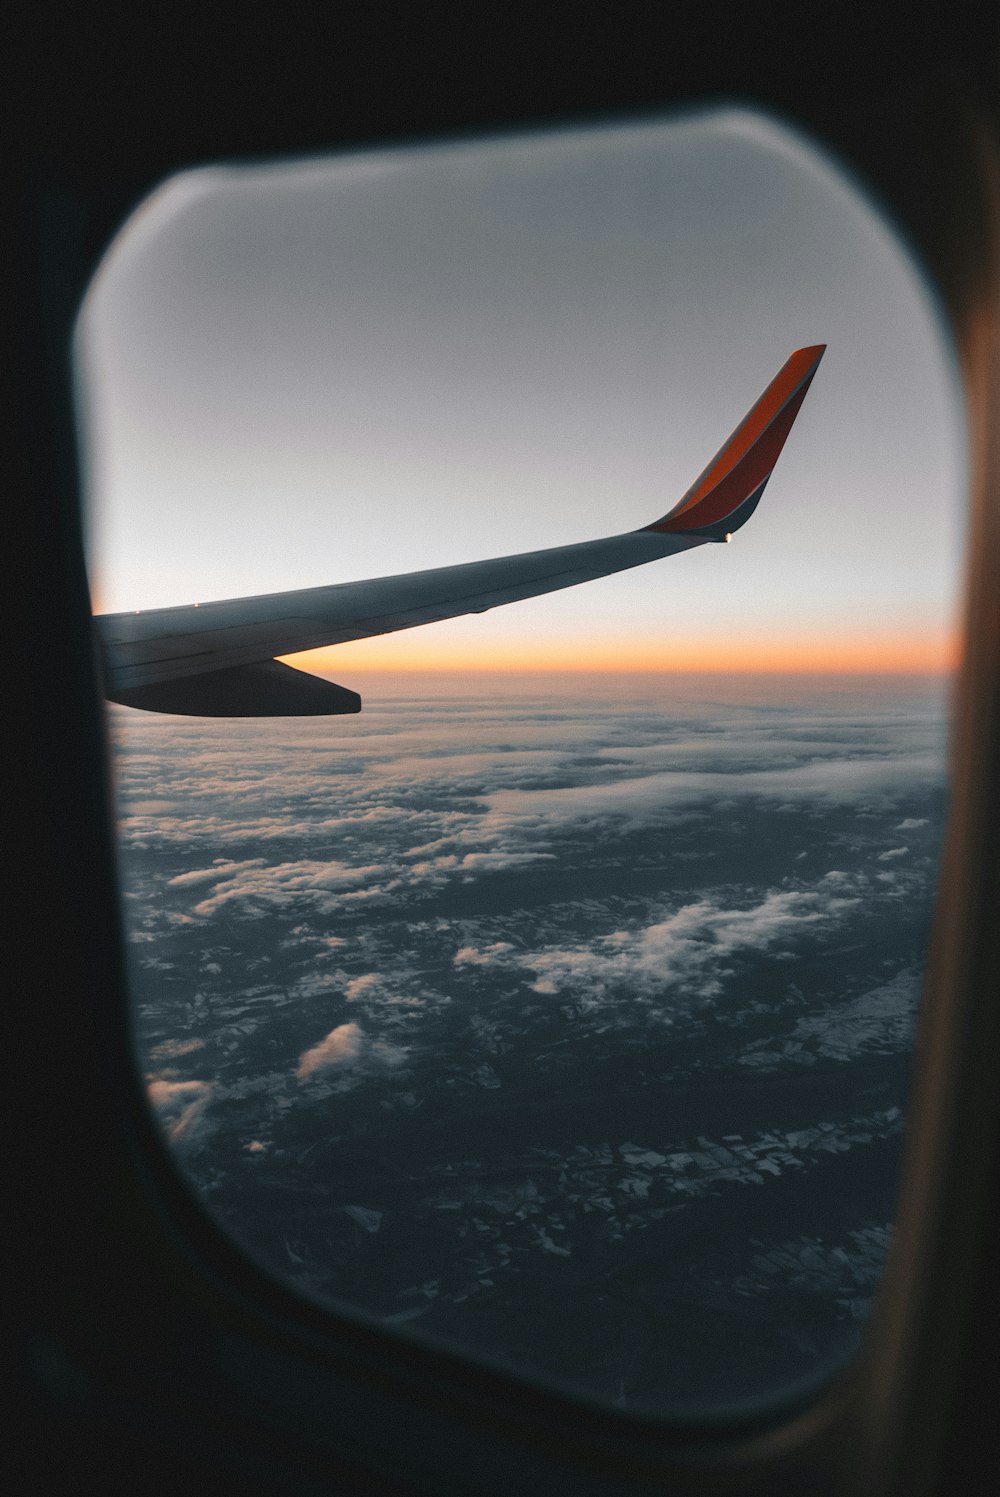 Vista das asas do avião da janela do avião